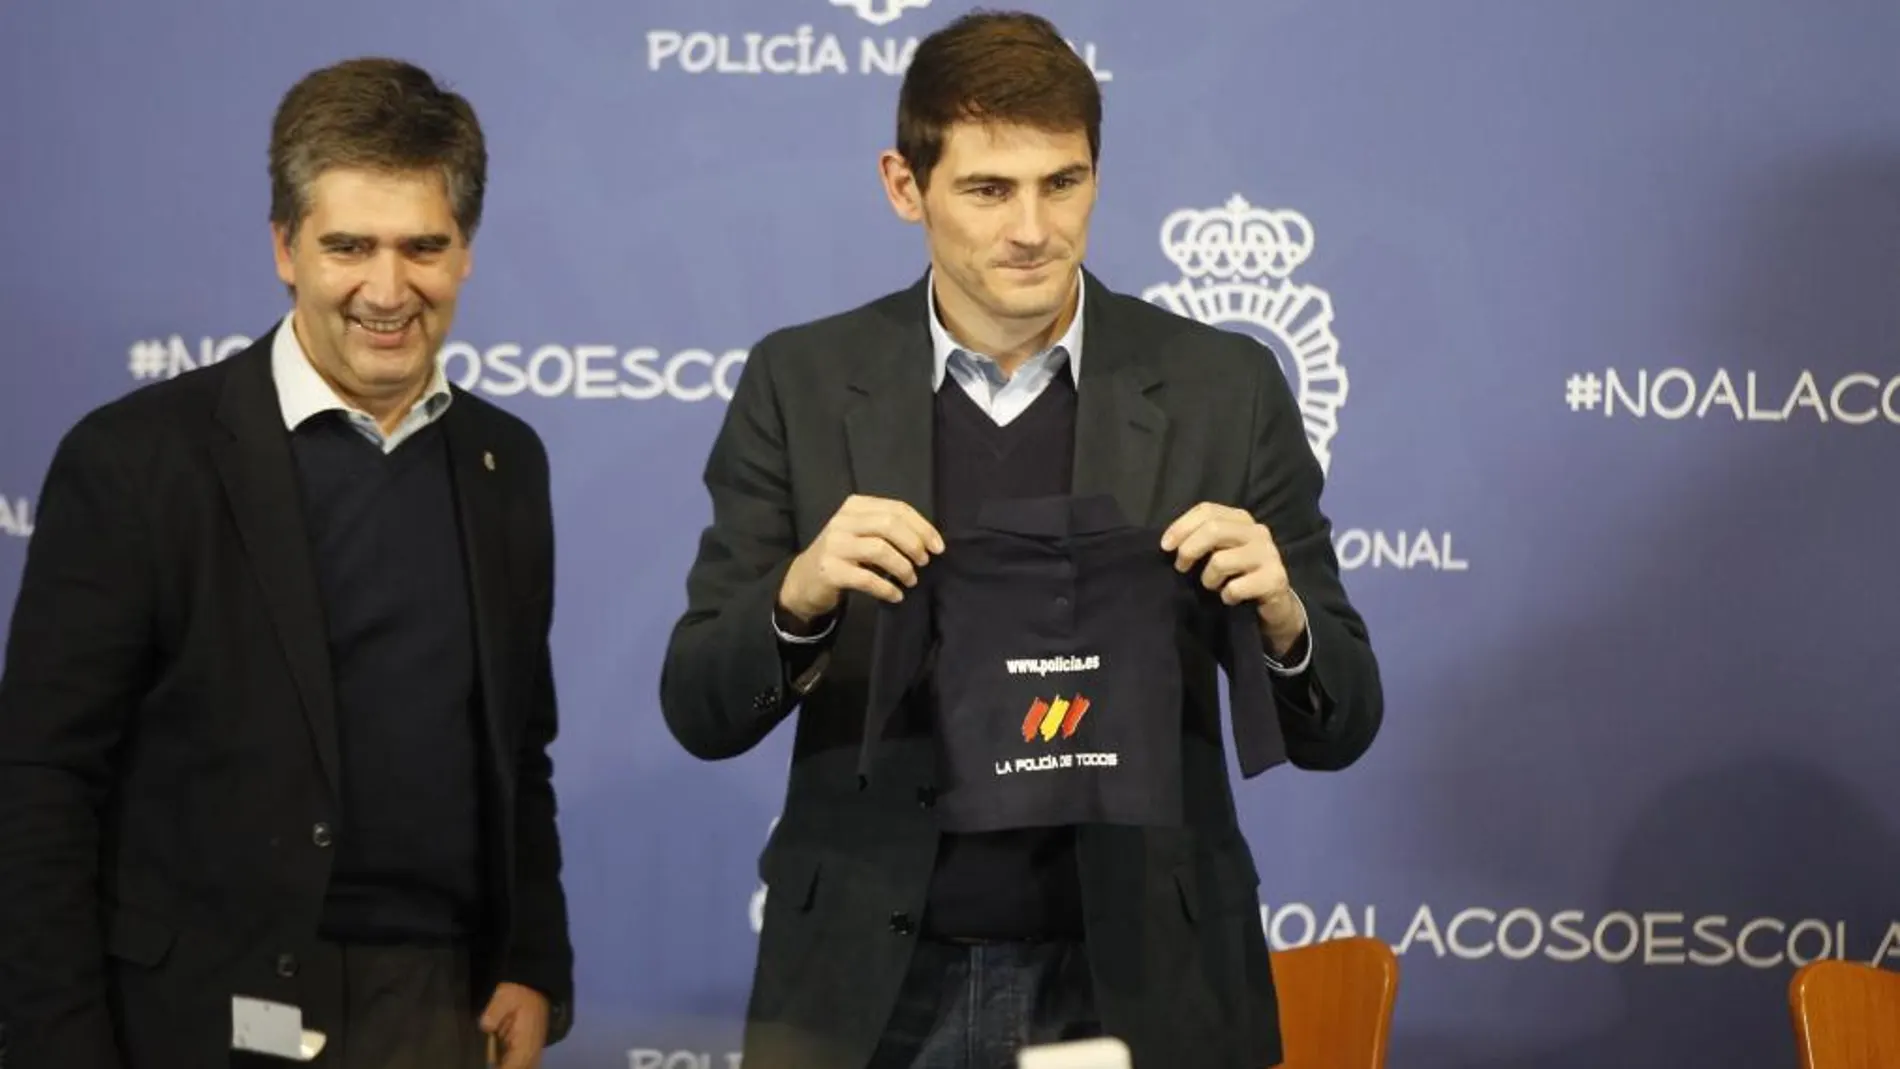 El portero del Real Madrid y de la selección española Iker Casillas durante la presentación de la campaña "Todos contra el acoso escolar"